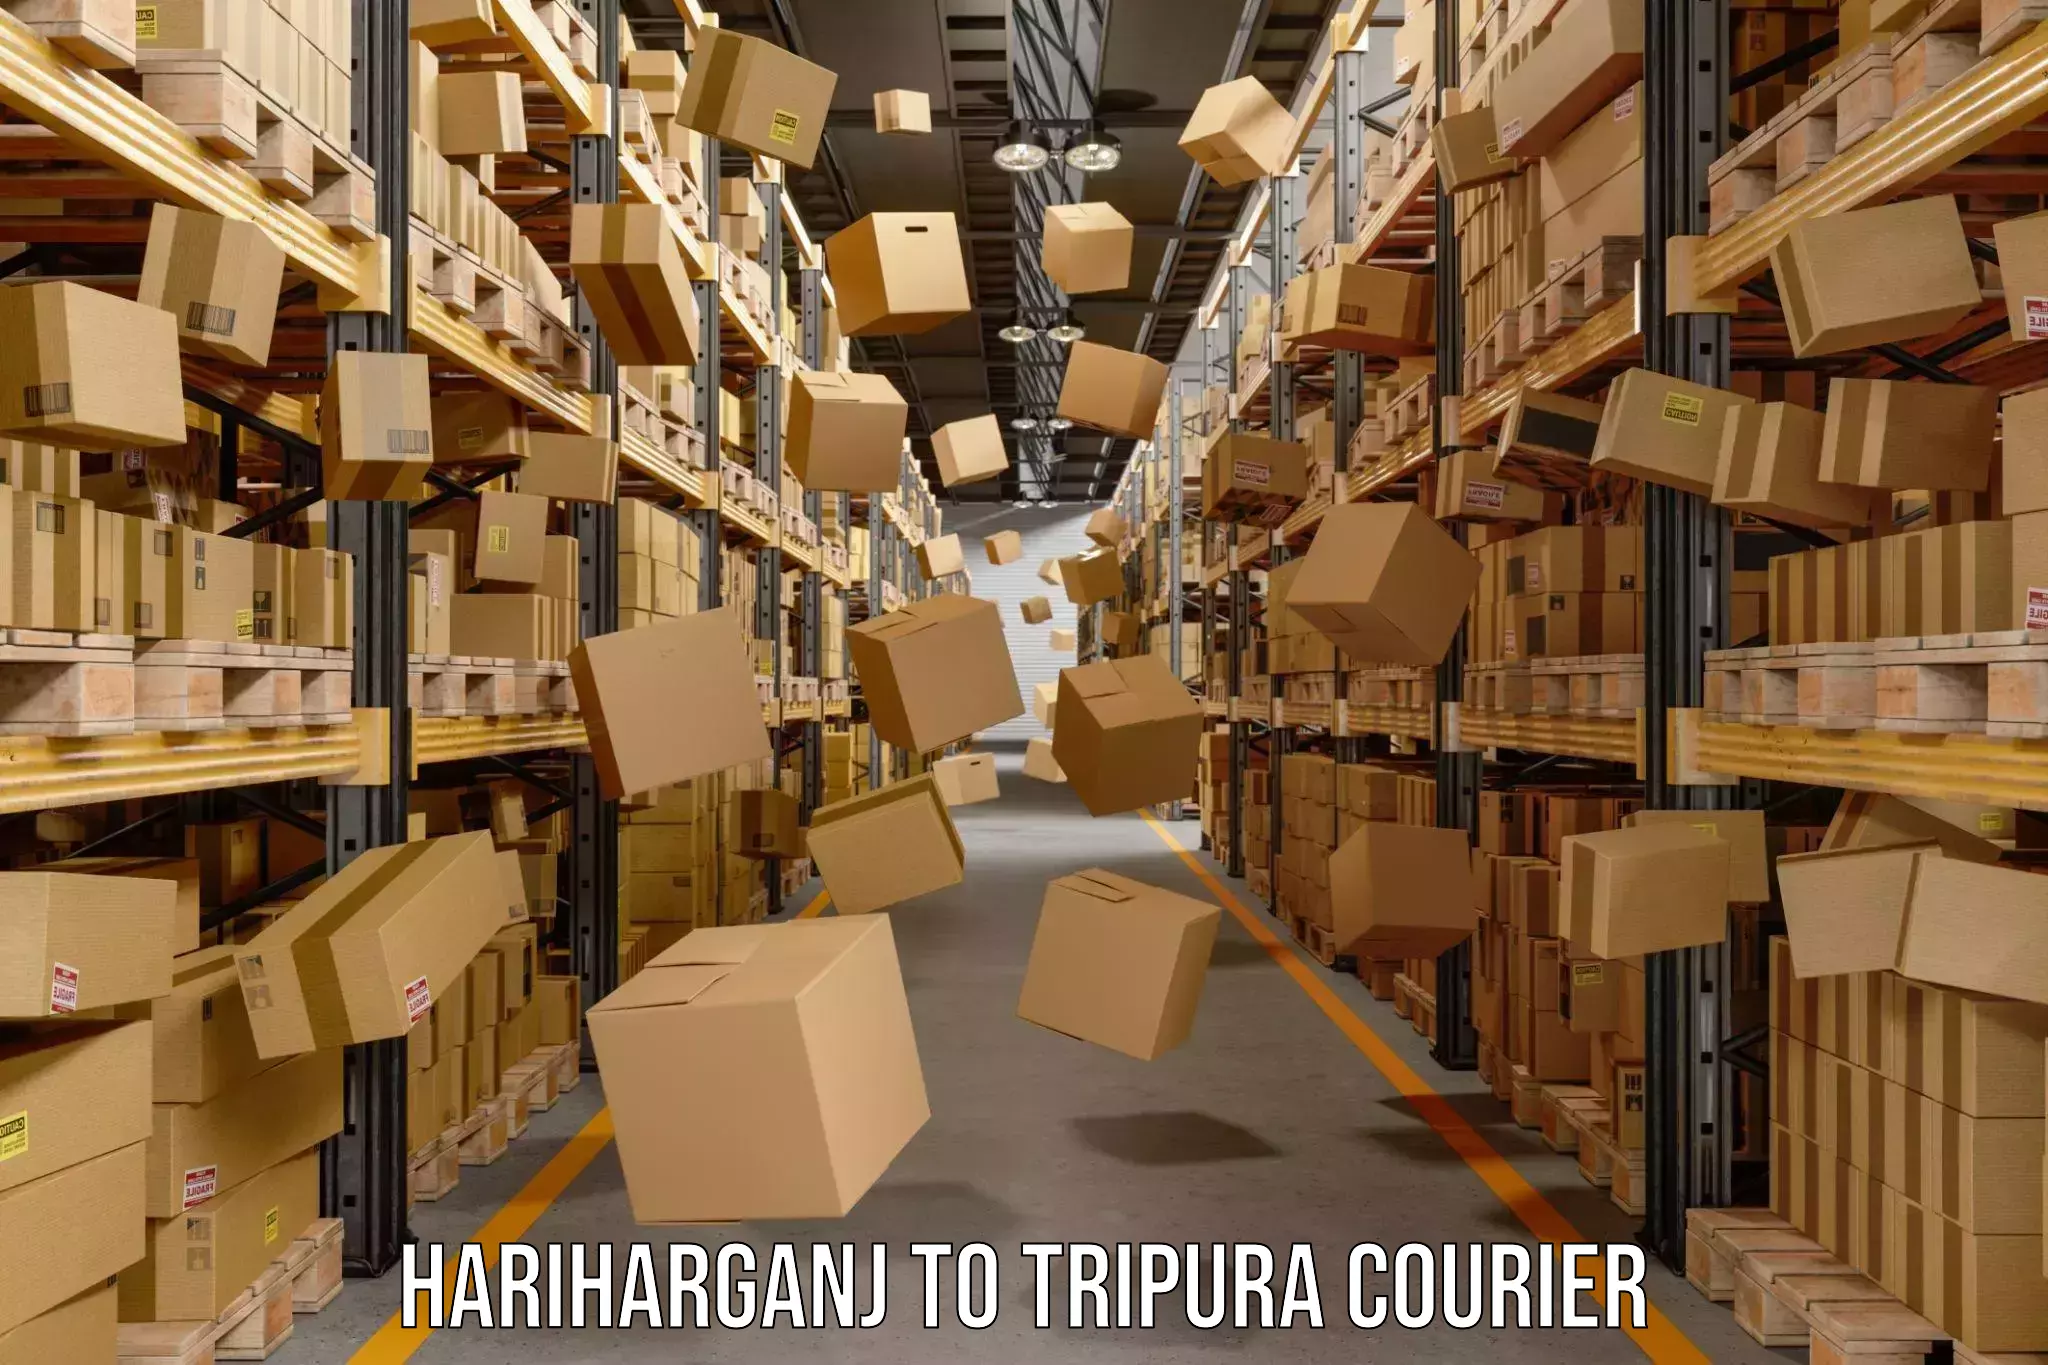 24/7 courier service Hariharganj to Manu Bazar